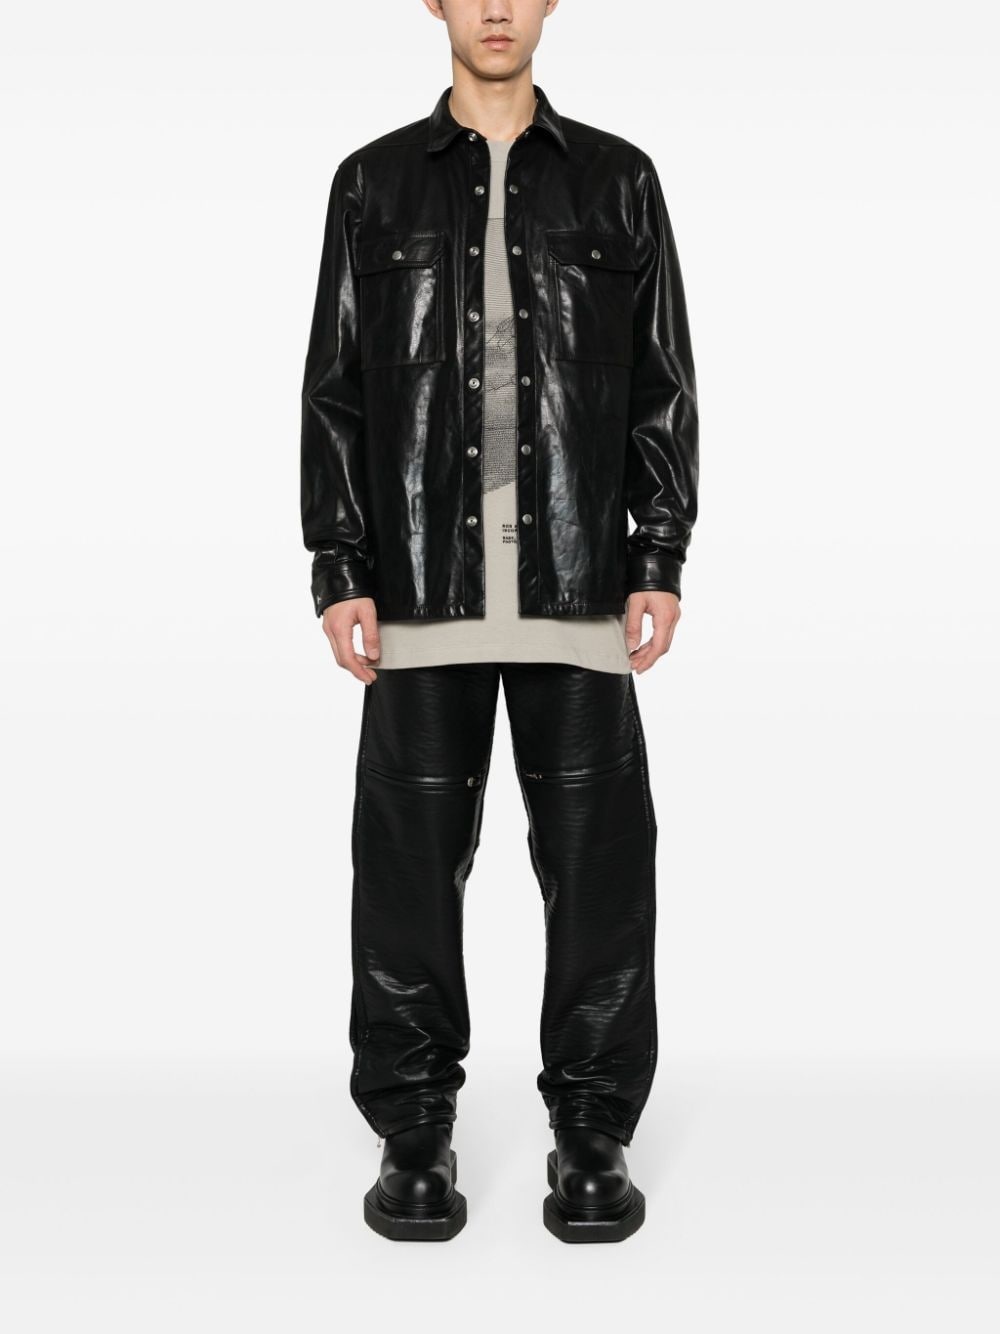 Outershirt leather jacket - 2